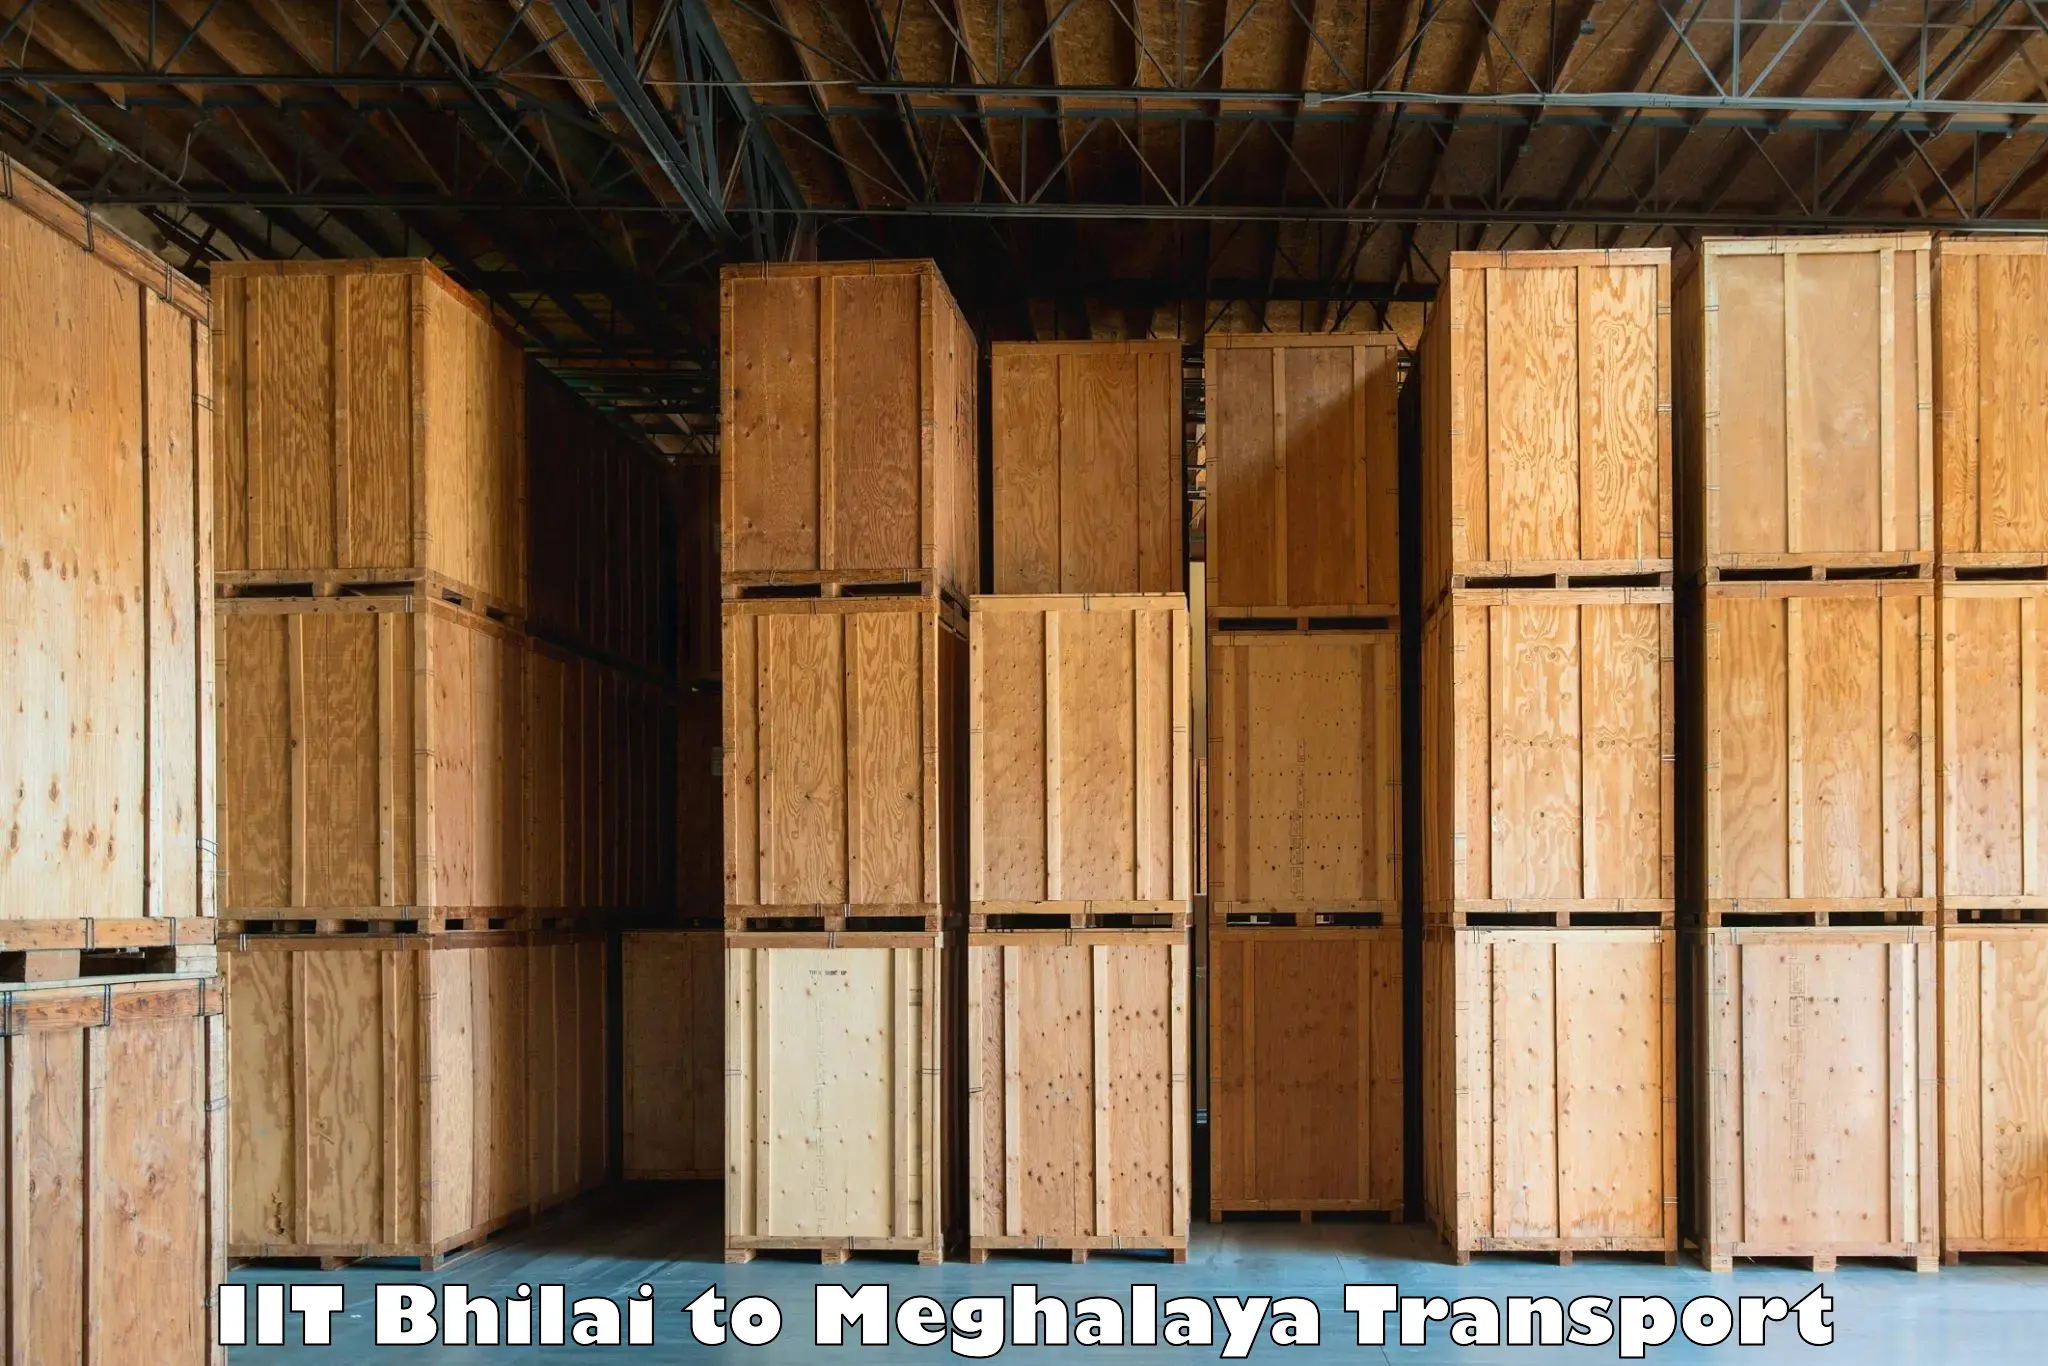 Pick up transport service IIT Bhilai to Meghalaya